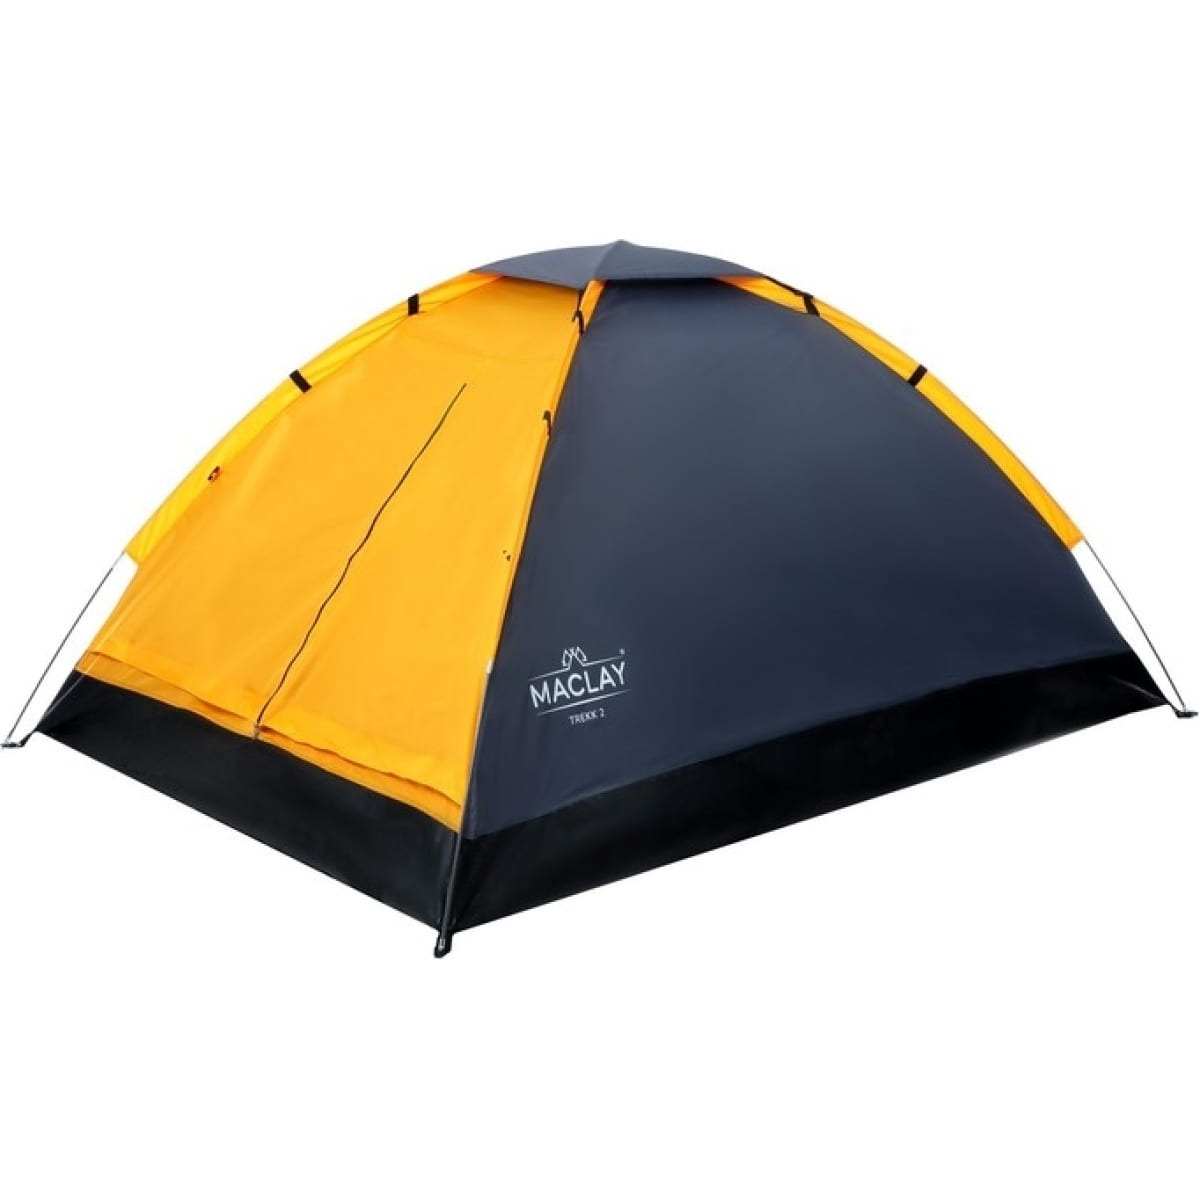 Палатка Maclay Trekk треккинговая 2 размер 205х150х105 см, цвет чёрный